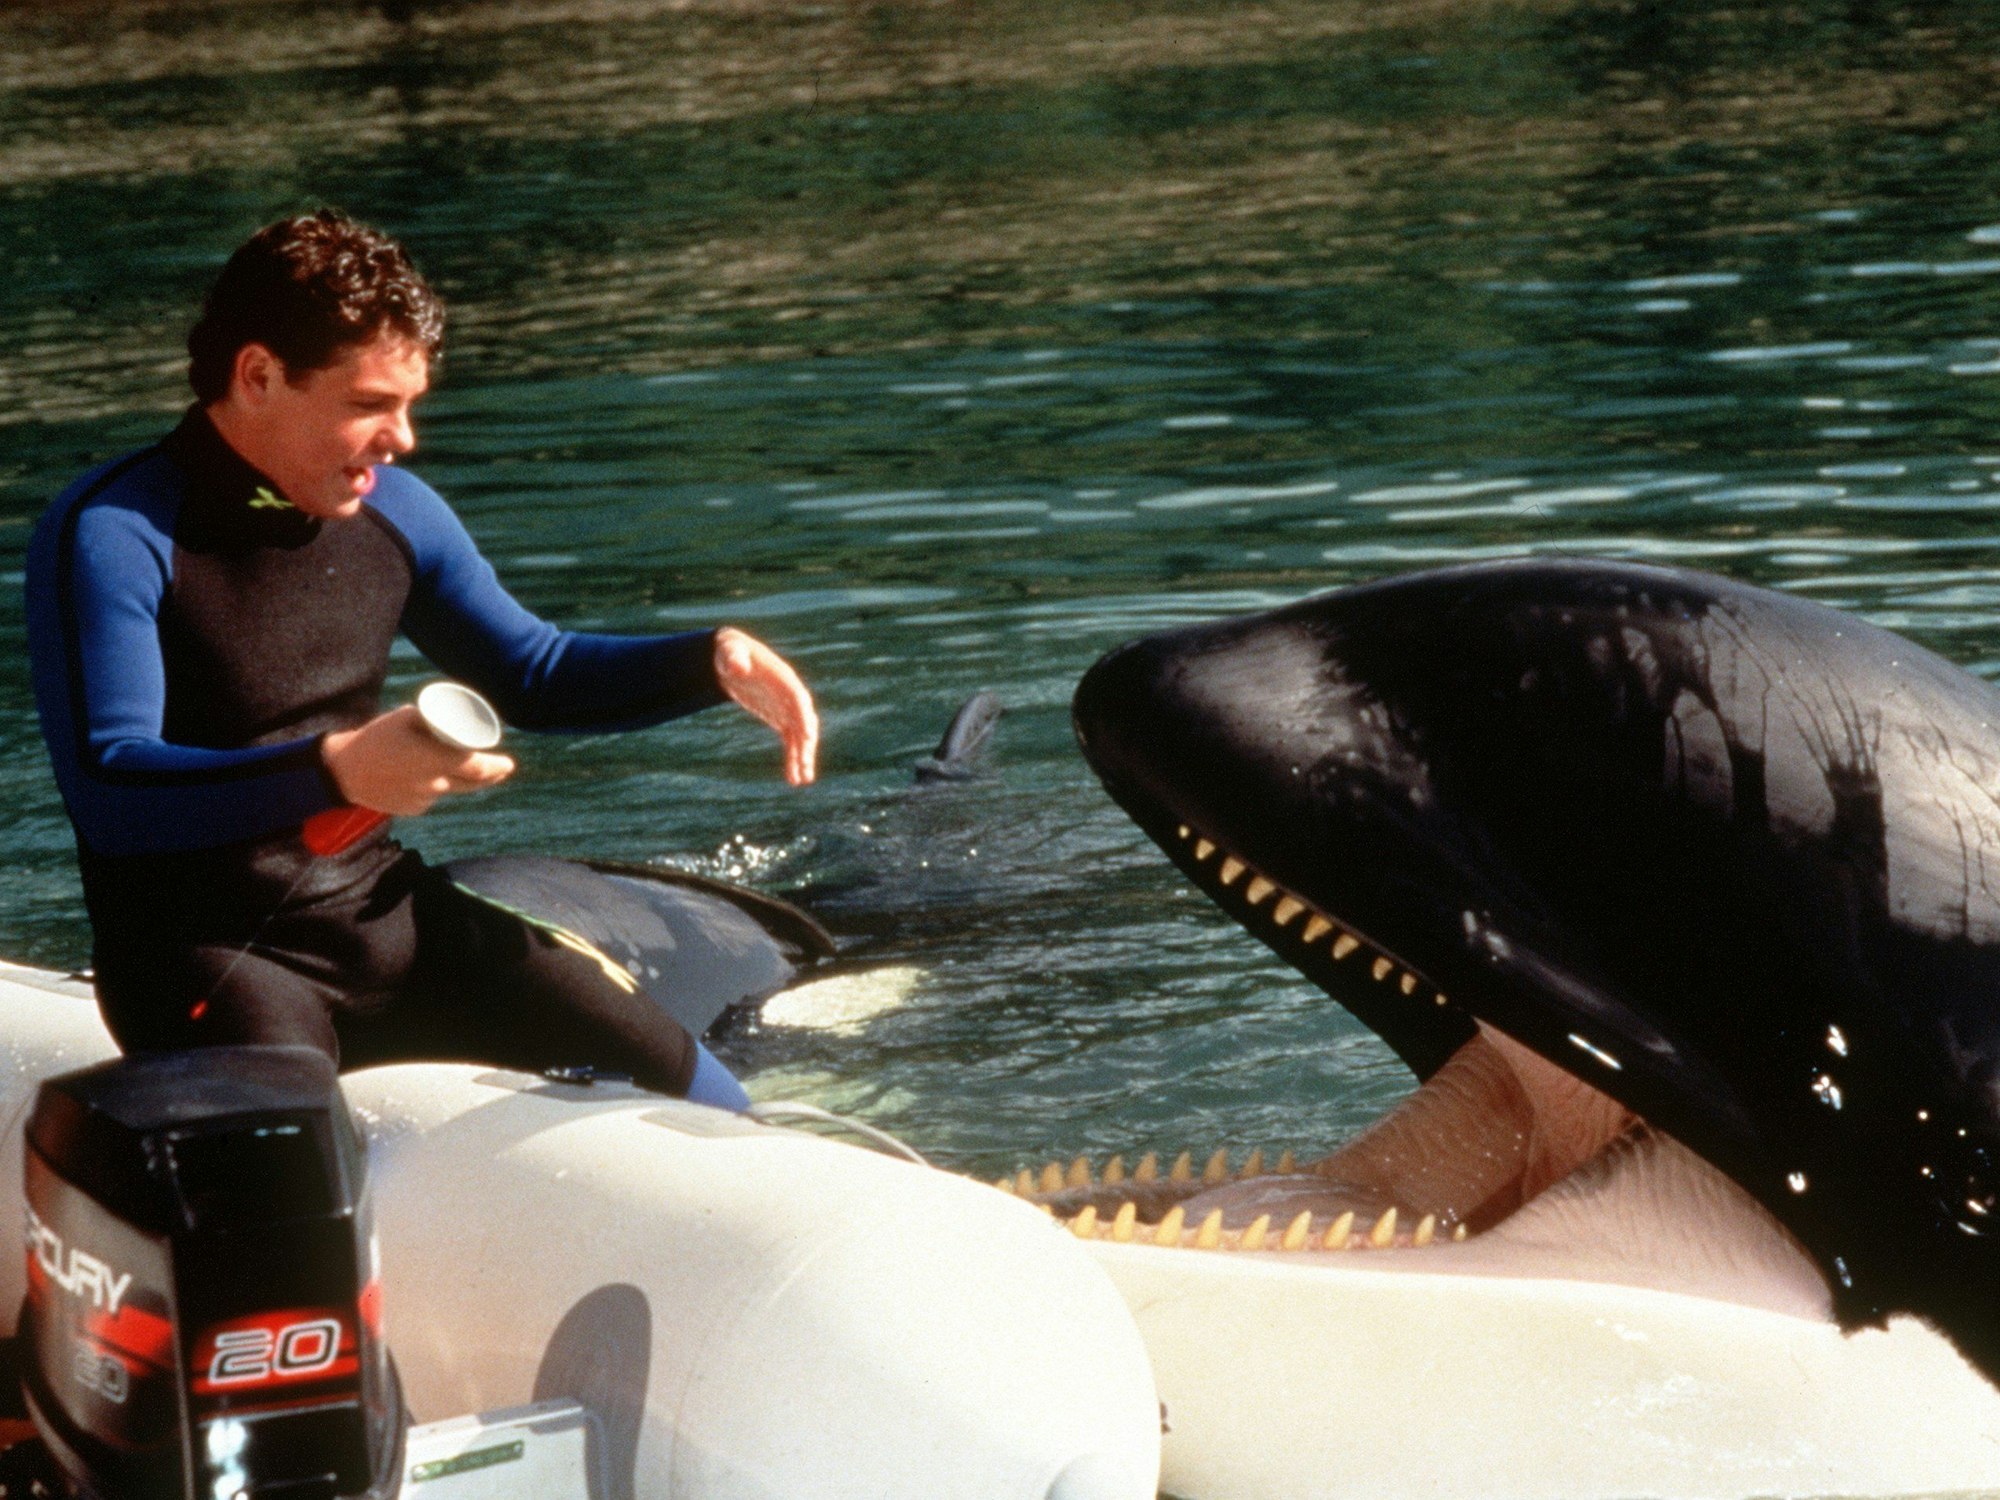 Szene aus dem Kinofilm "Free Willy" mit Jason James Richter als Jesse und seinem Freund, dem Orca-Wal Willy.